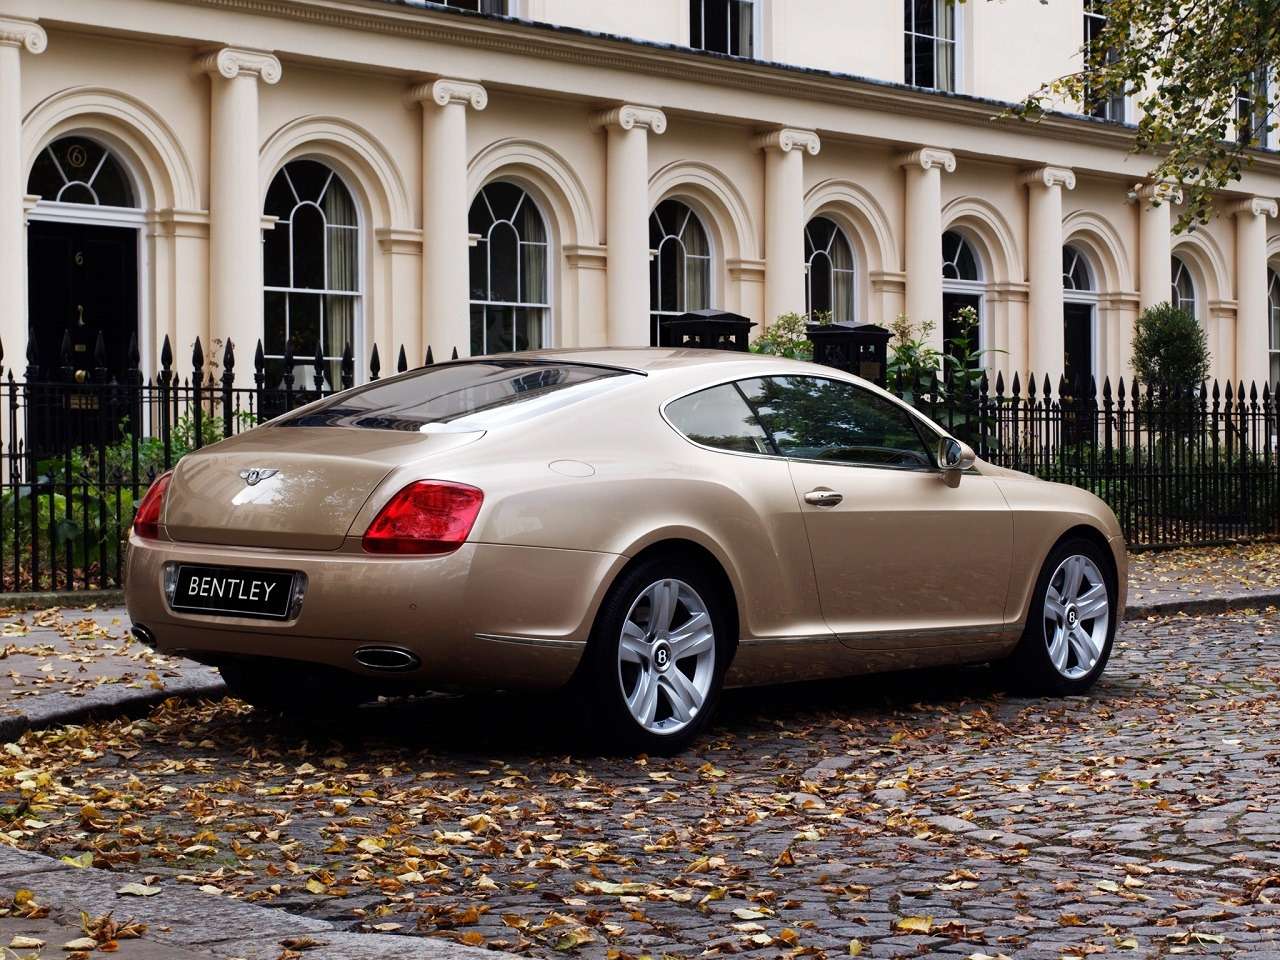 Роскошь недорого: как выбрать Bentley с пробегом (и не разориться потом) — фото 1242684